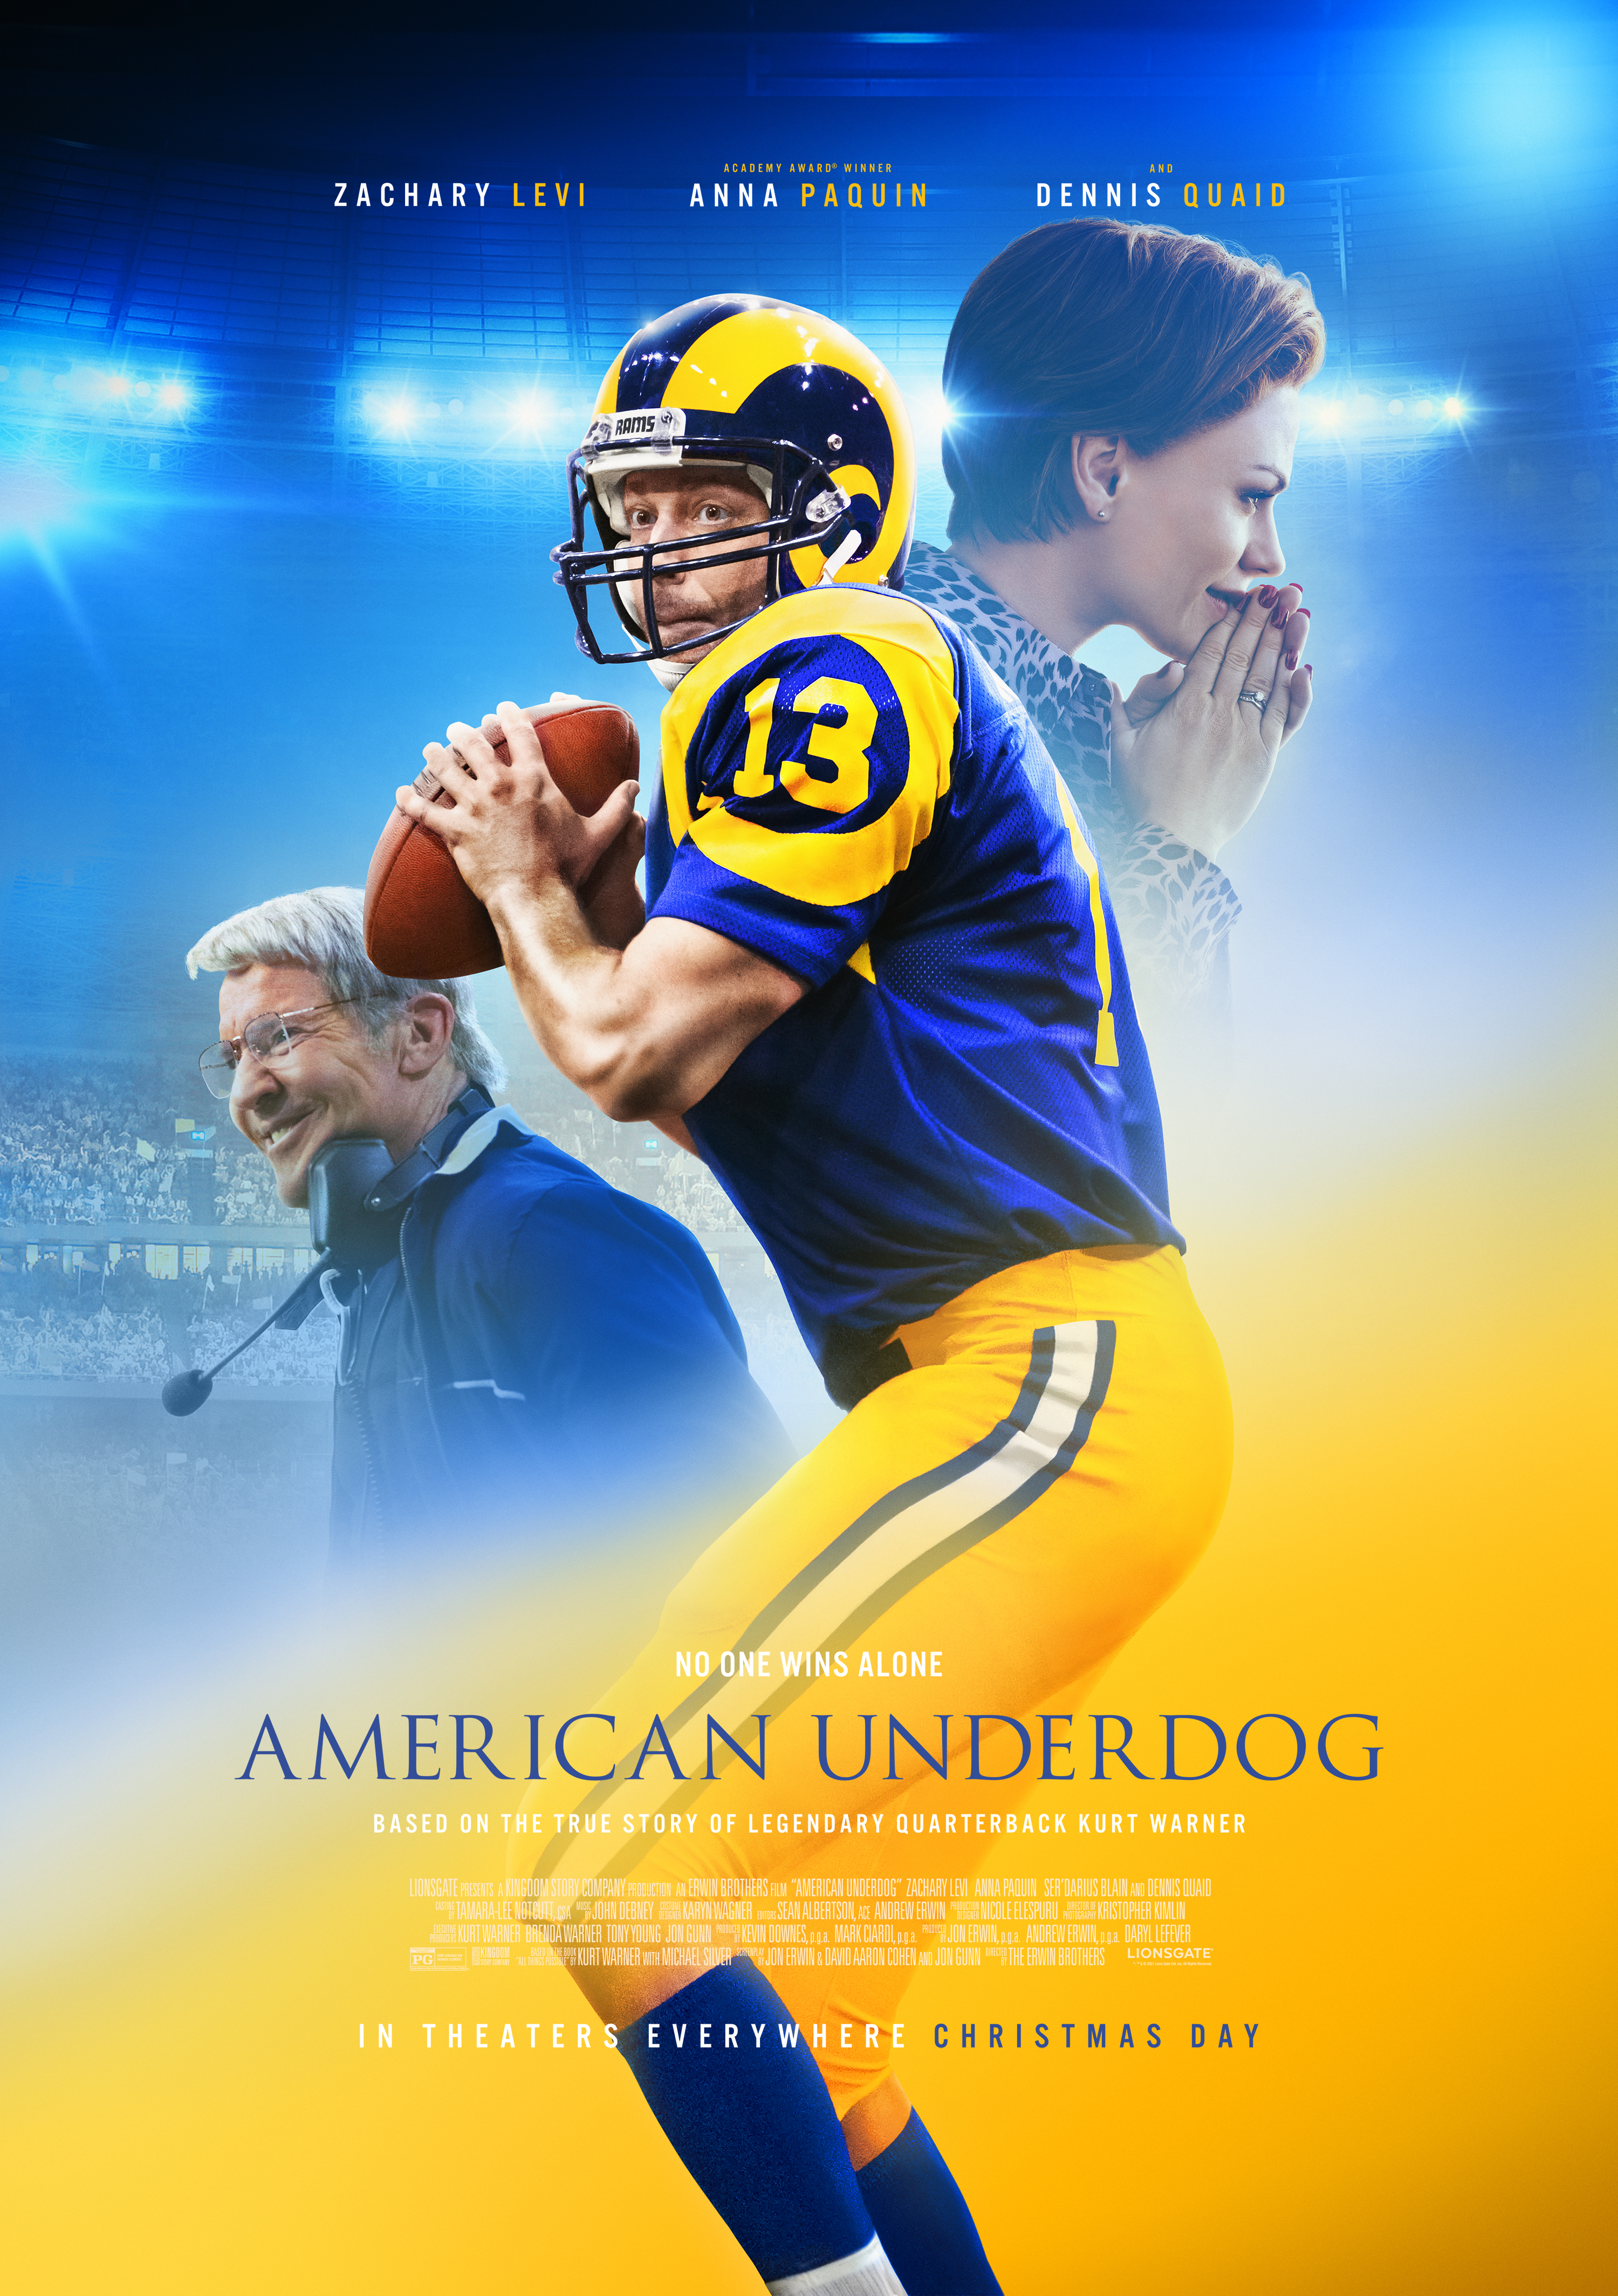 Zachary Levi, Kurt Warner hope 'American Underdog' inspires